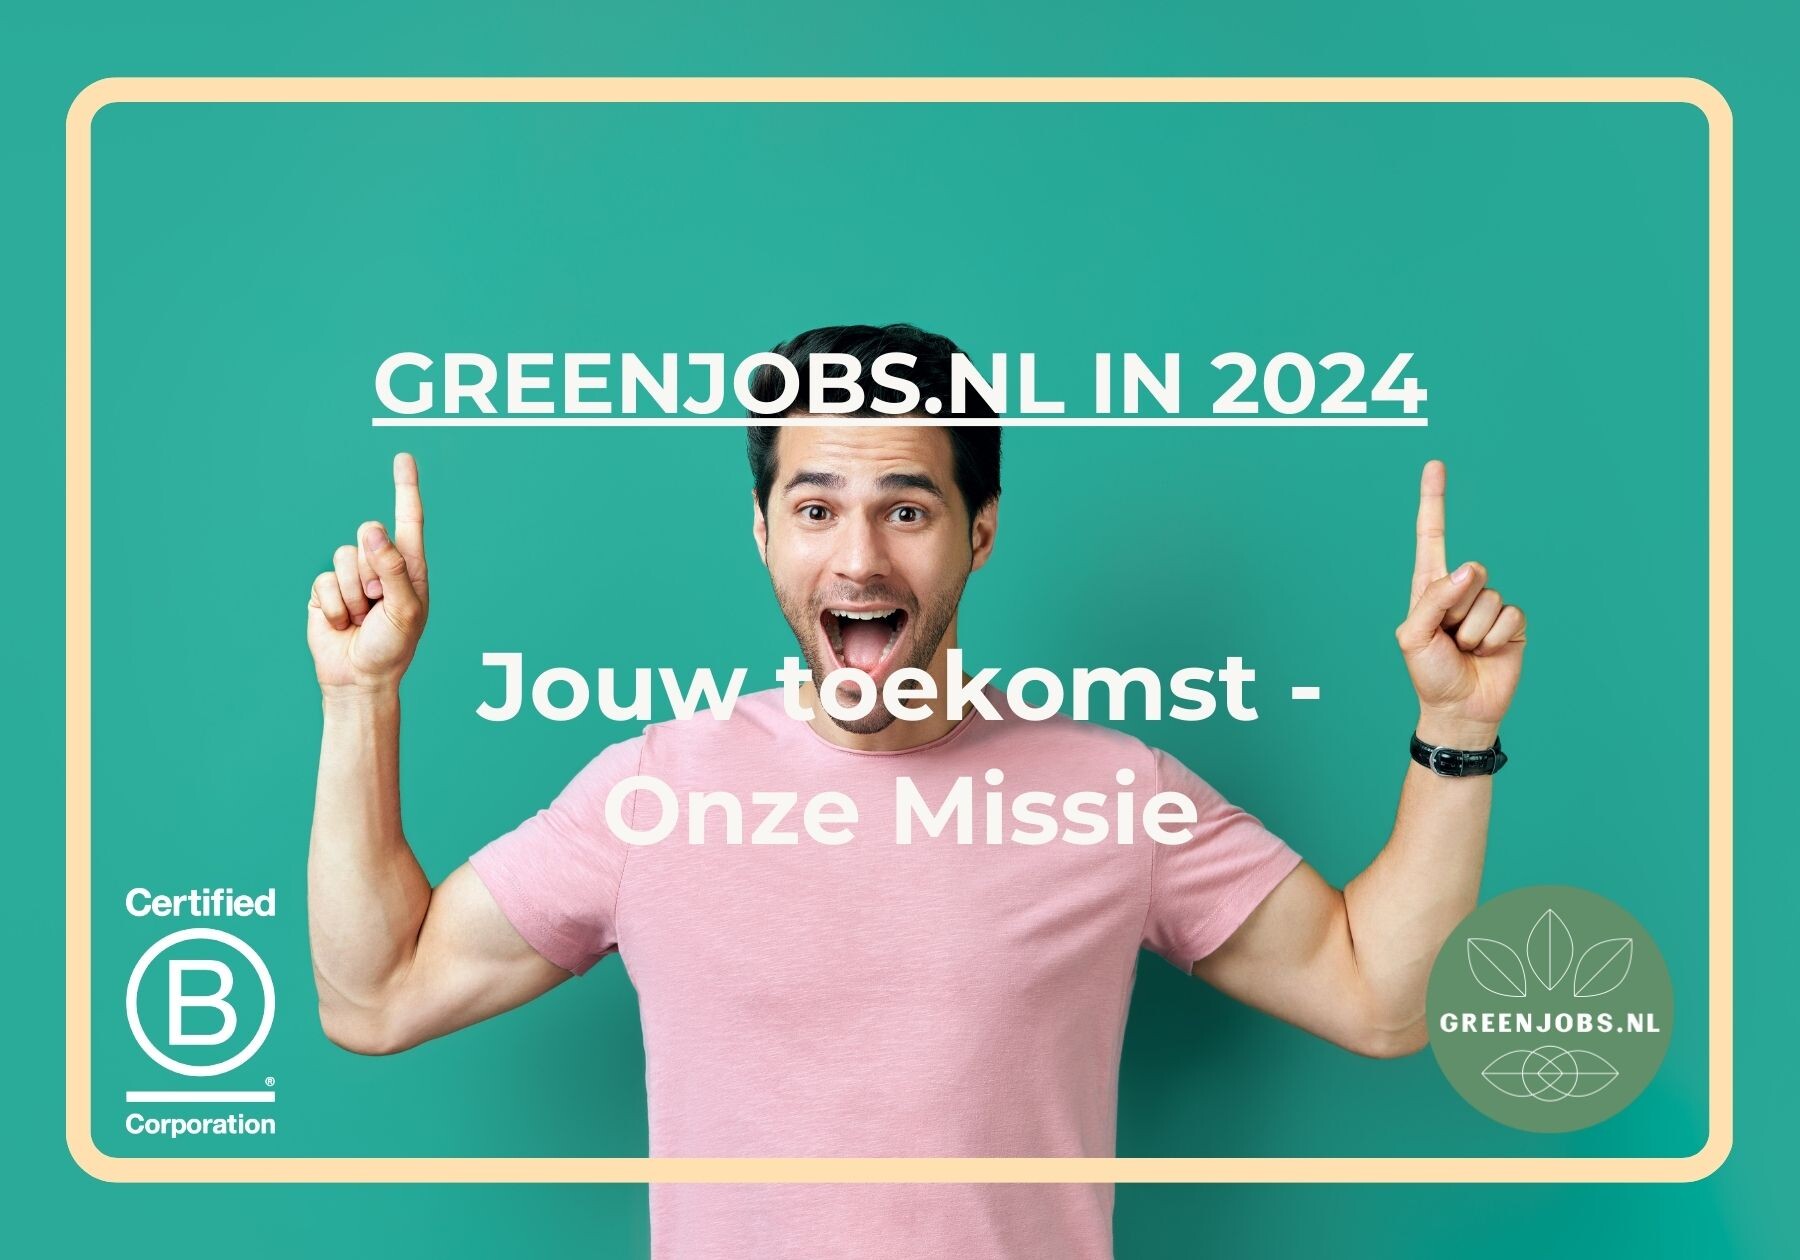 Greenjobs.nl in 2024: Jouw Toekomst, Onze Missie